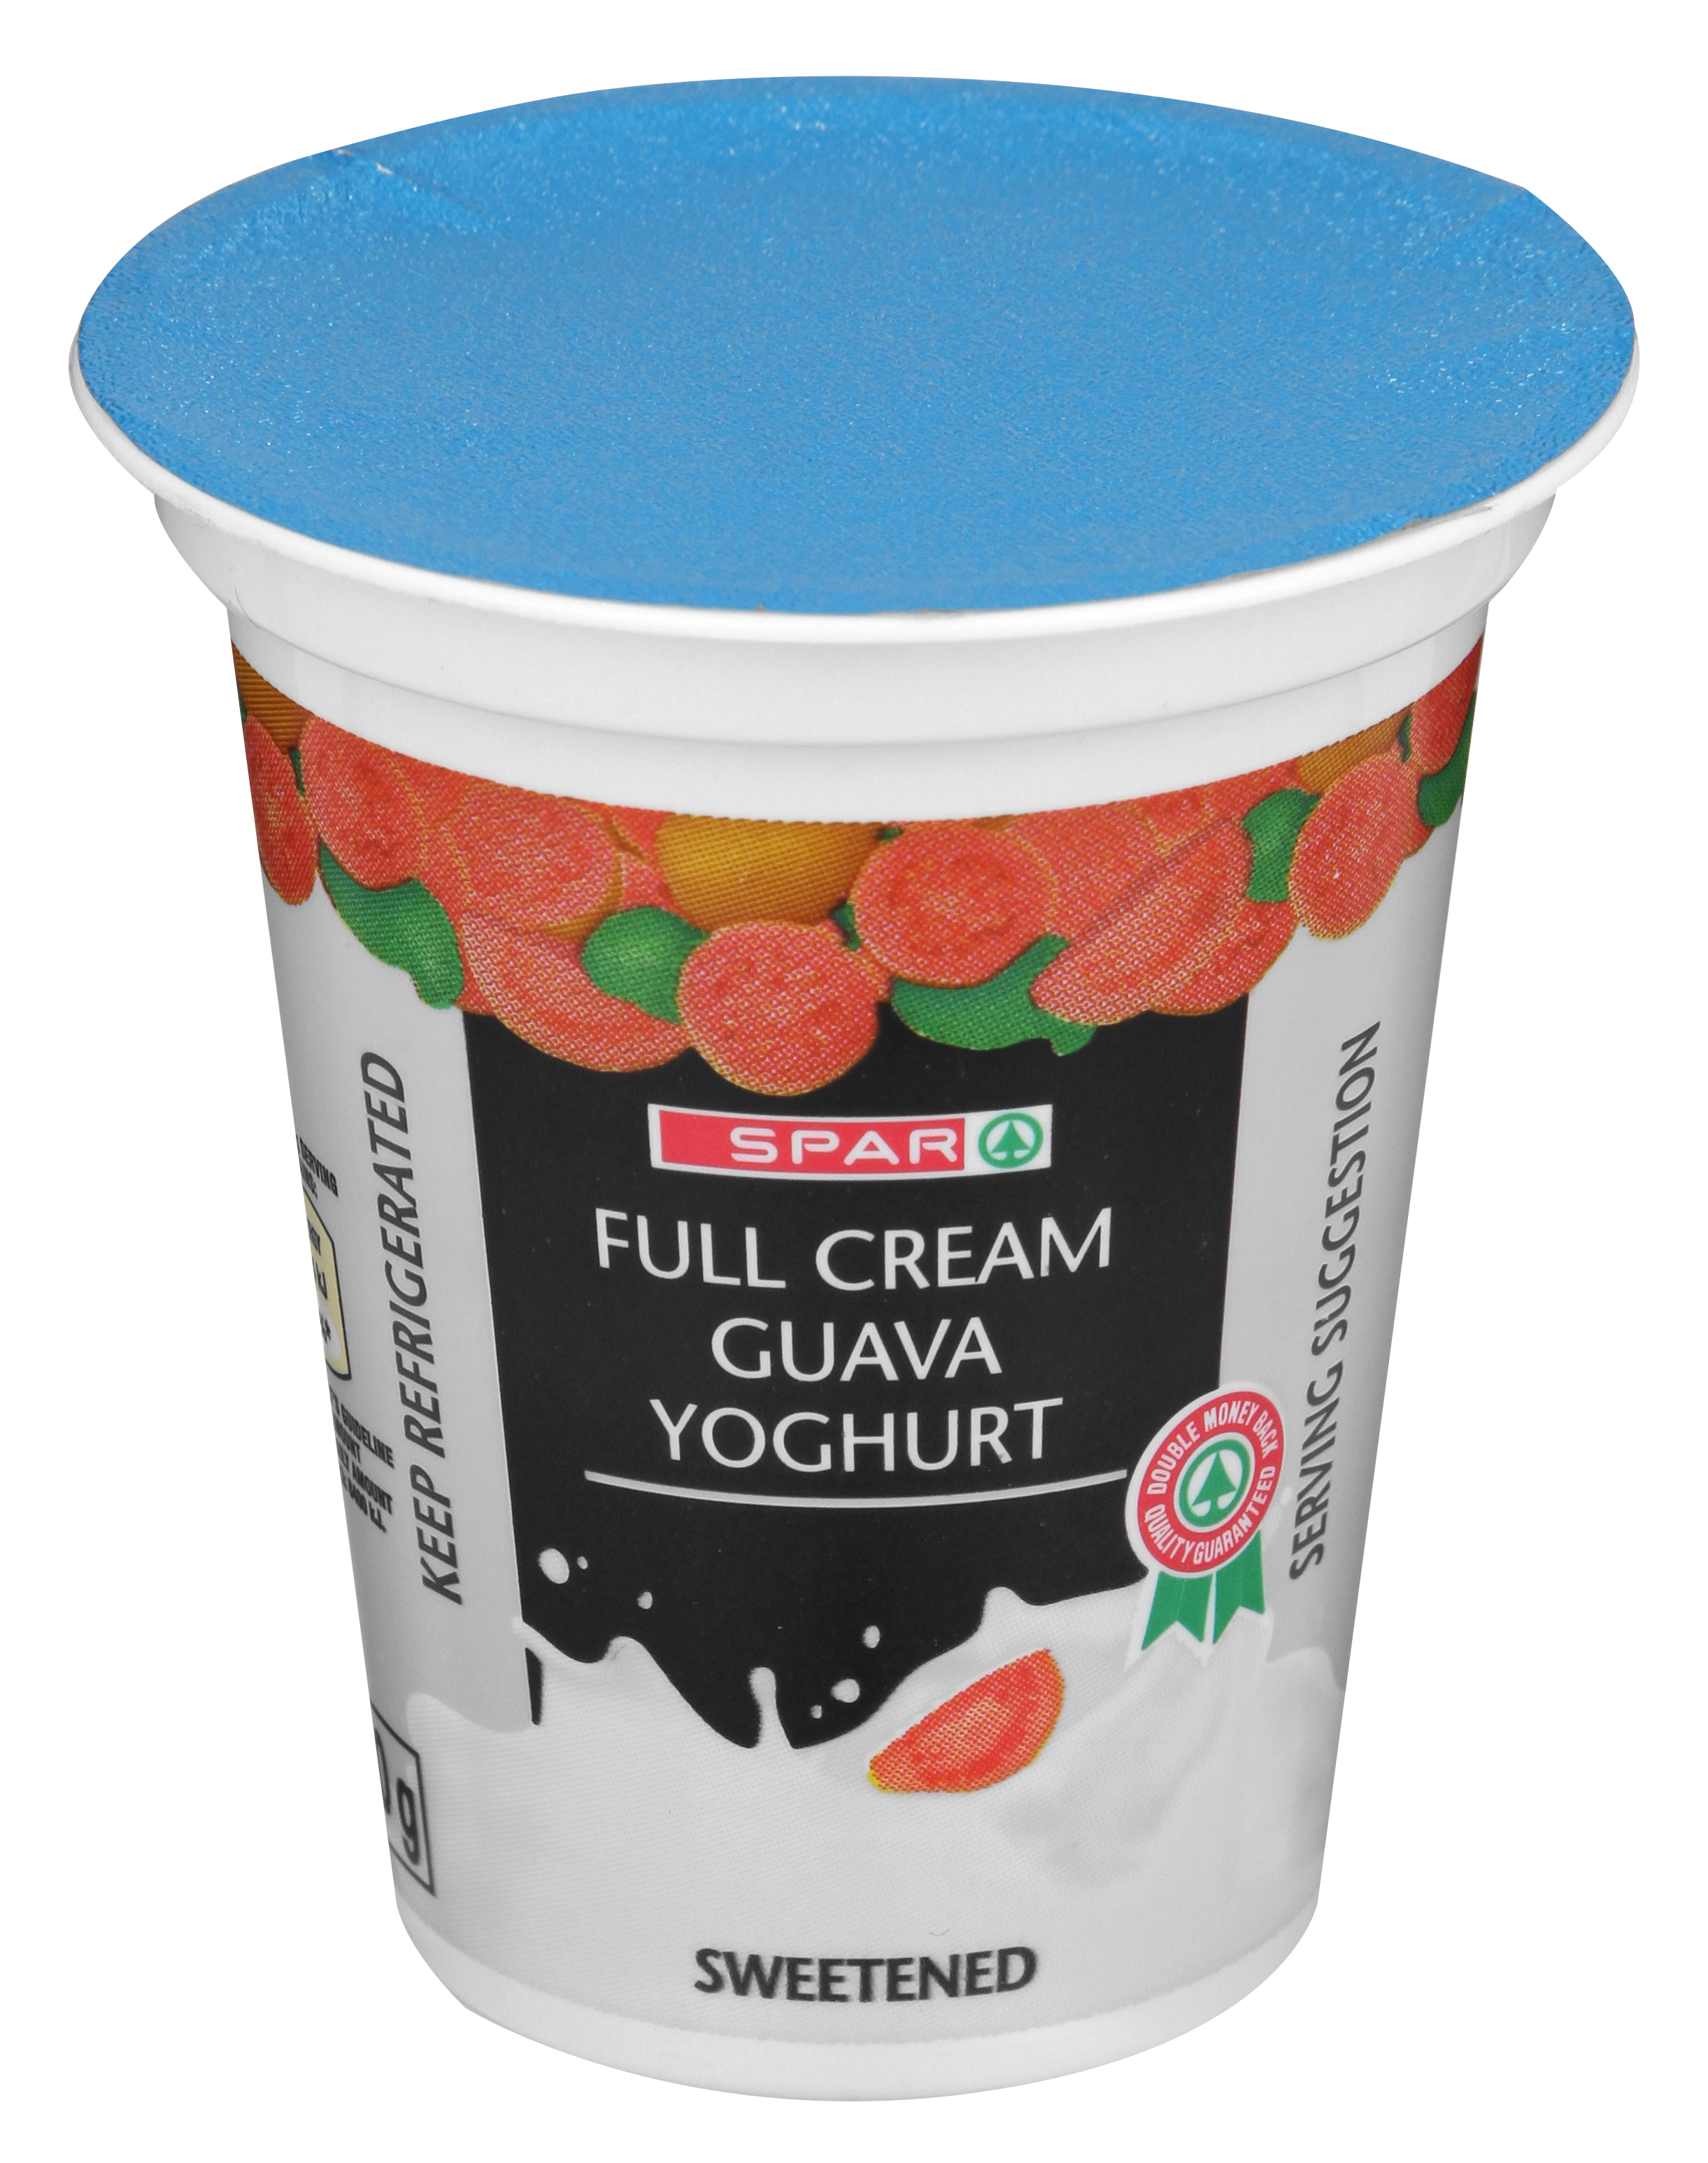 full cream yoghurt - guava 